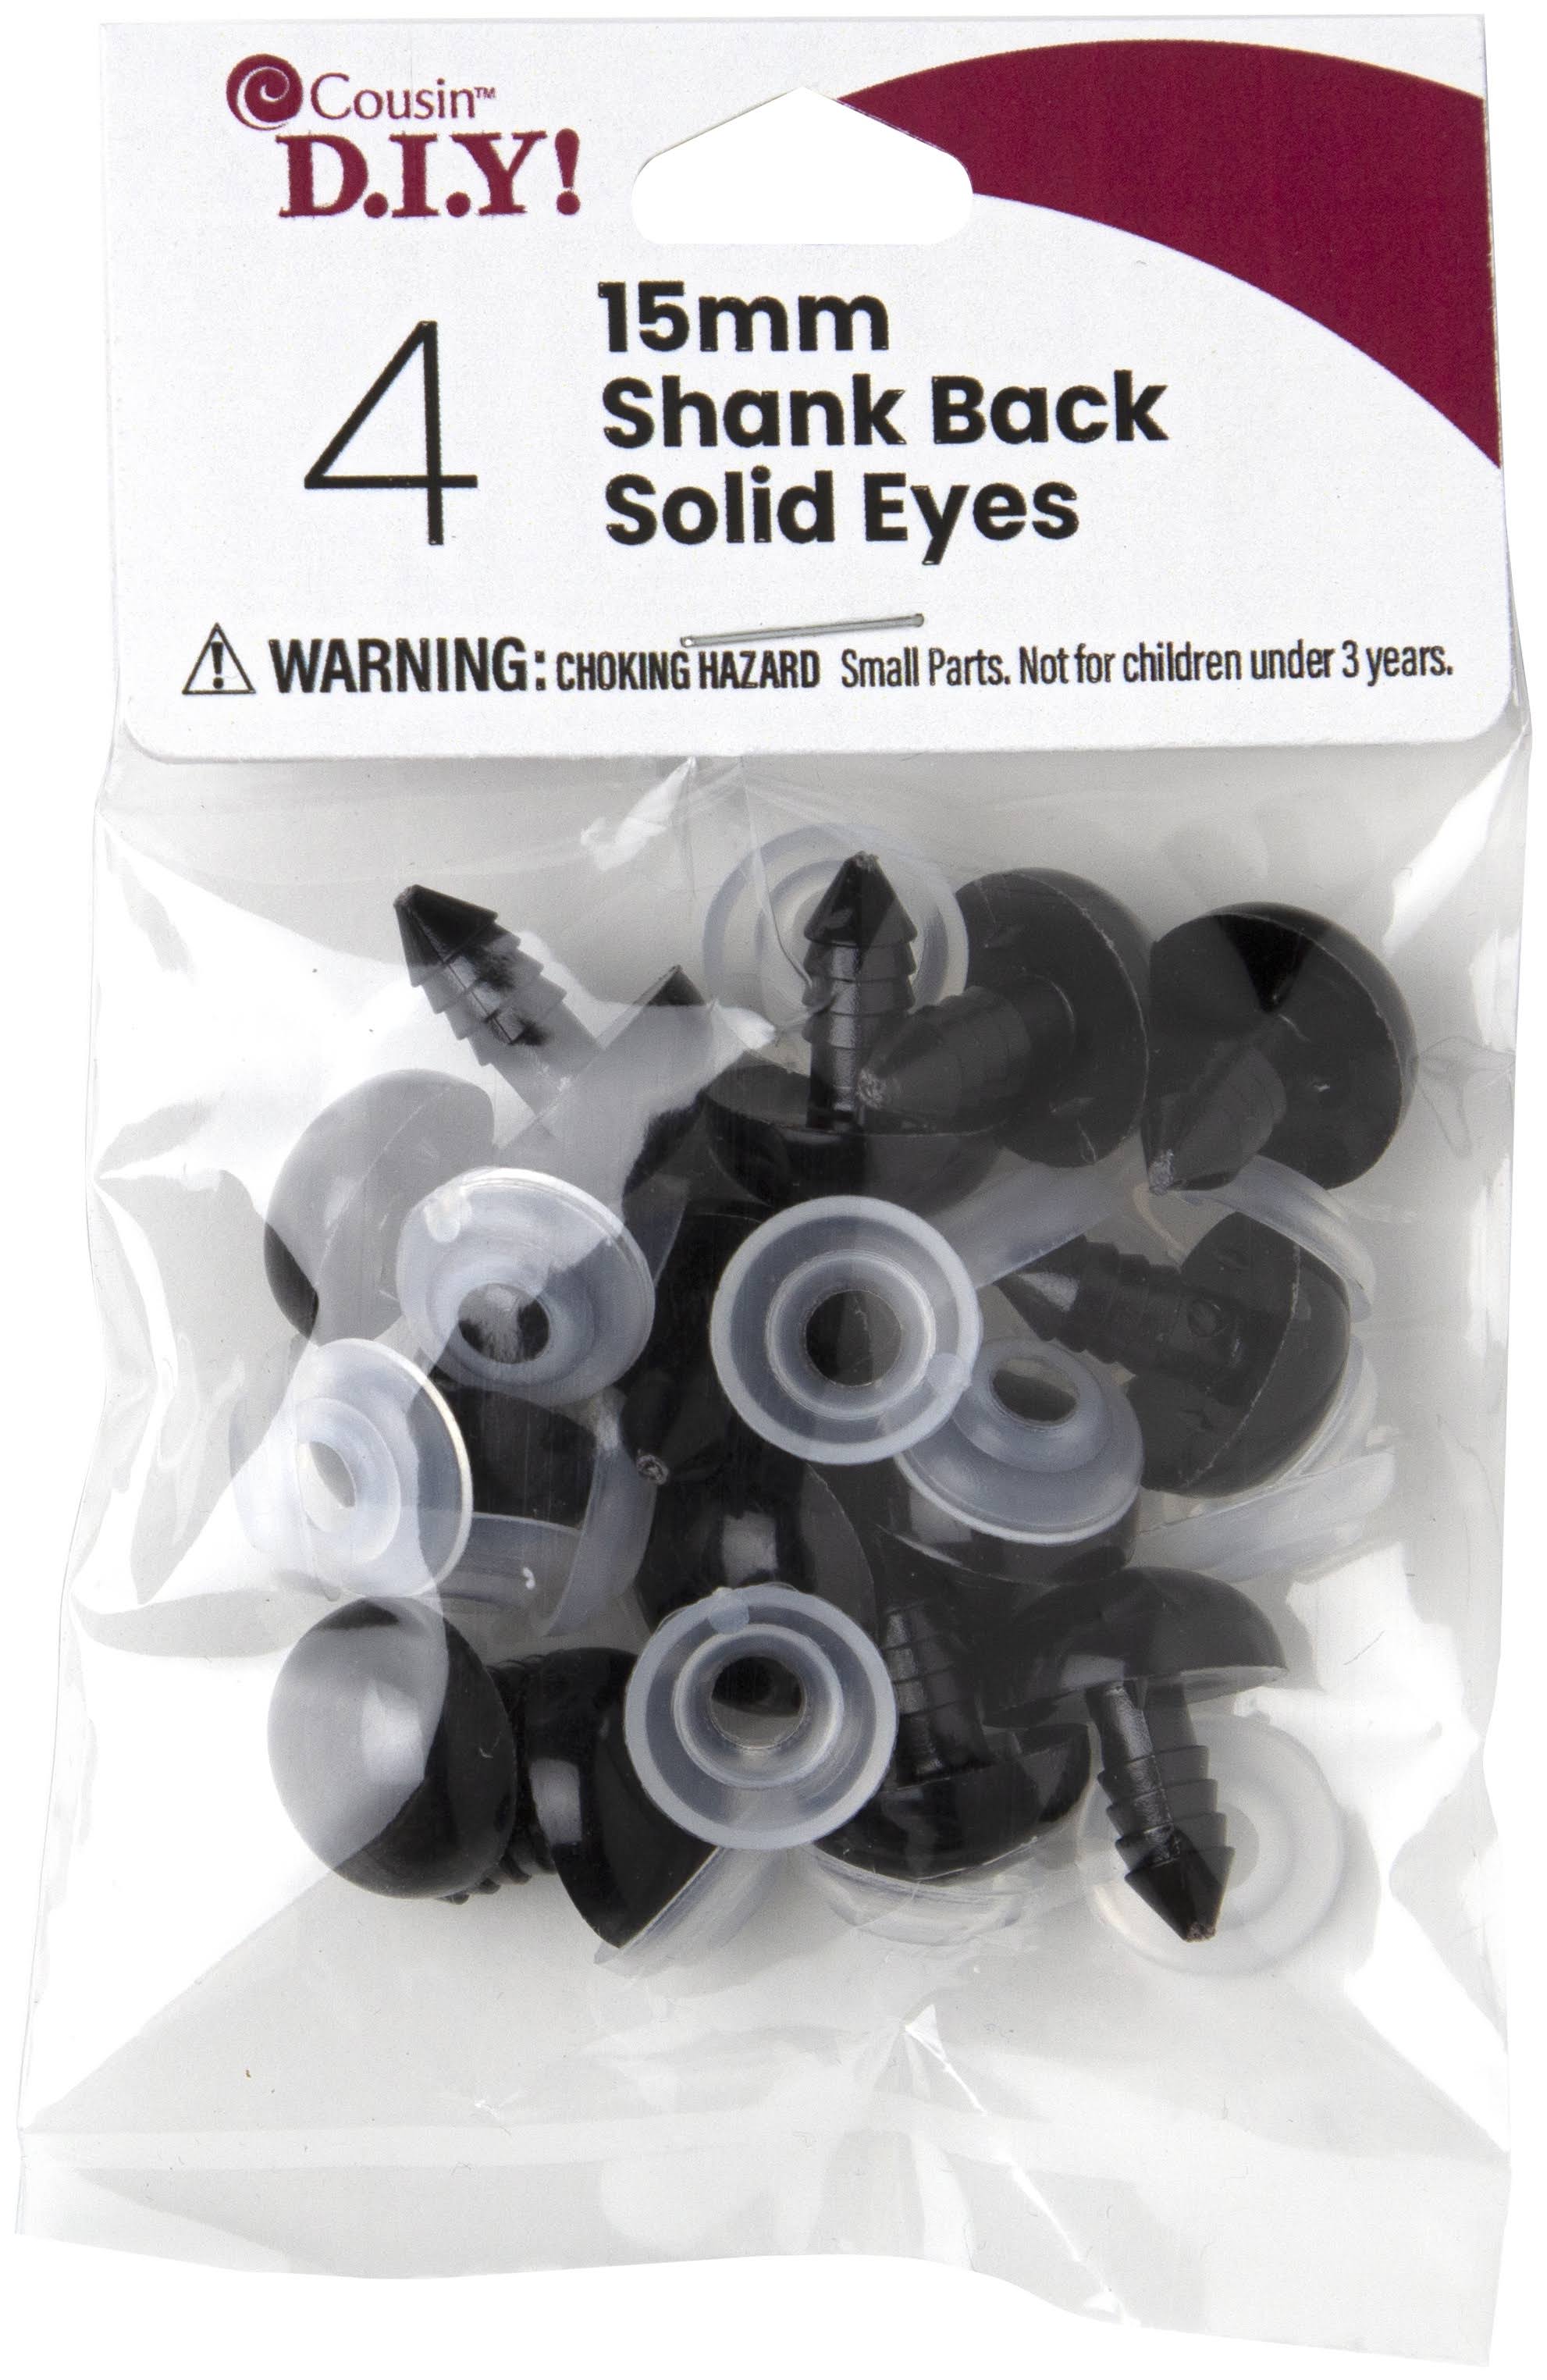 Cousin Shank Back Solid Eyes 15mm 4 Pack - Black